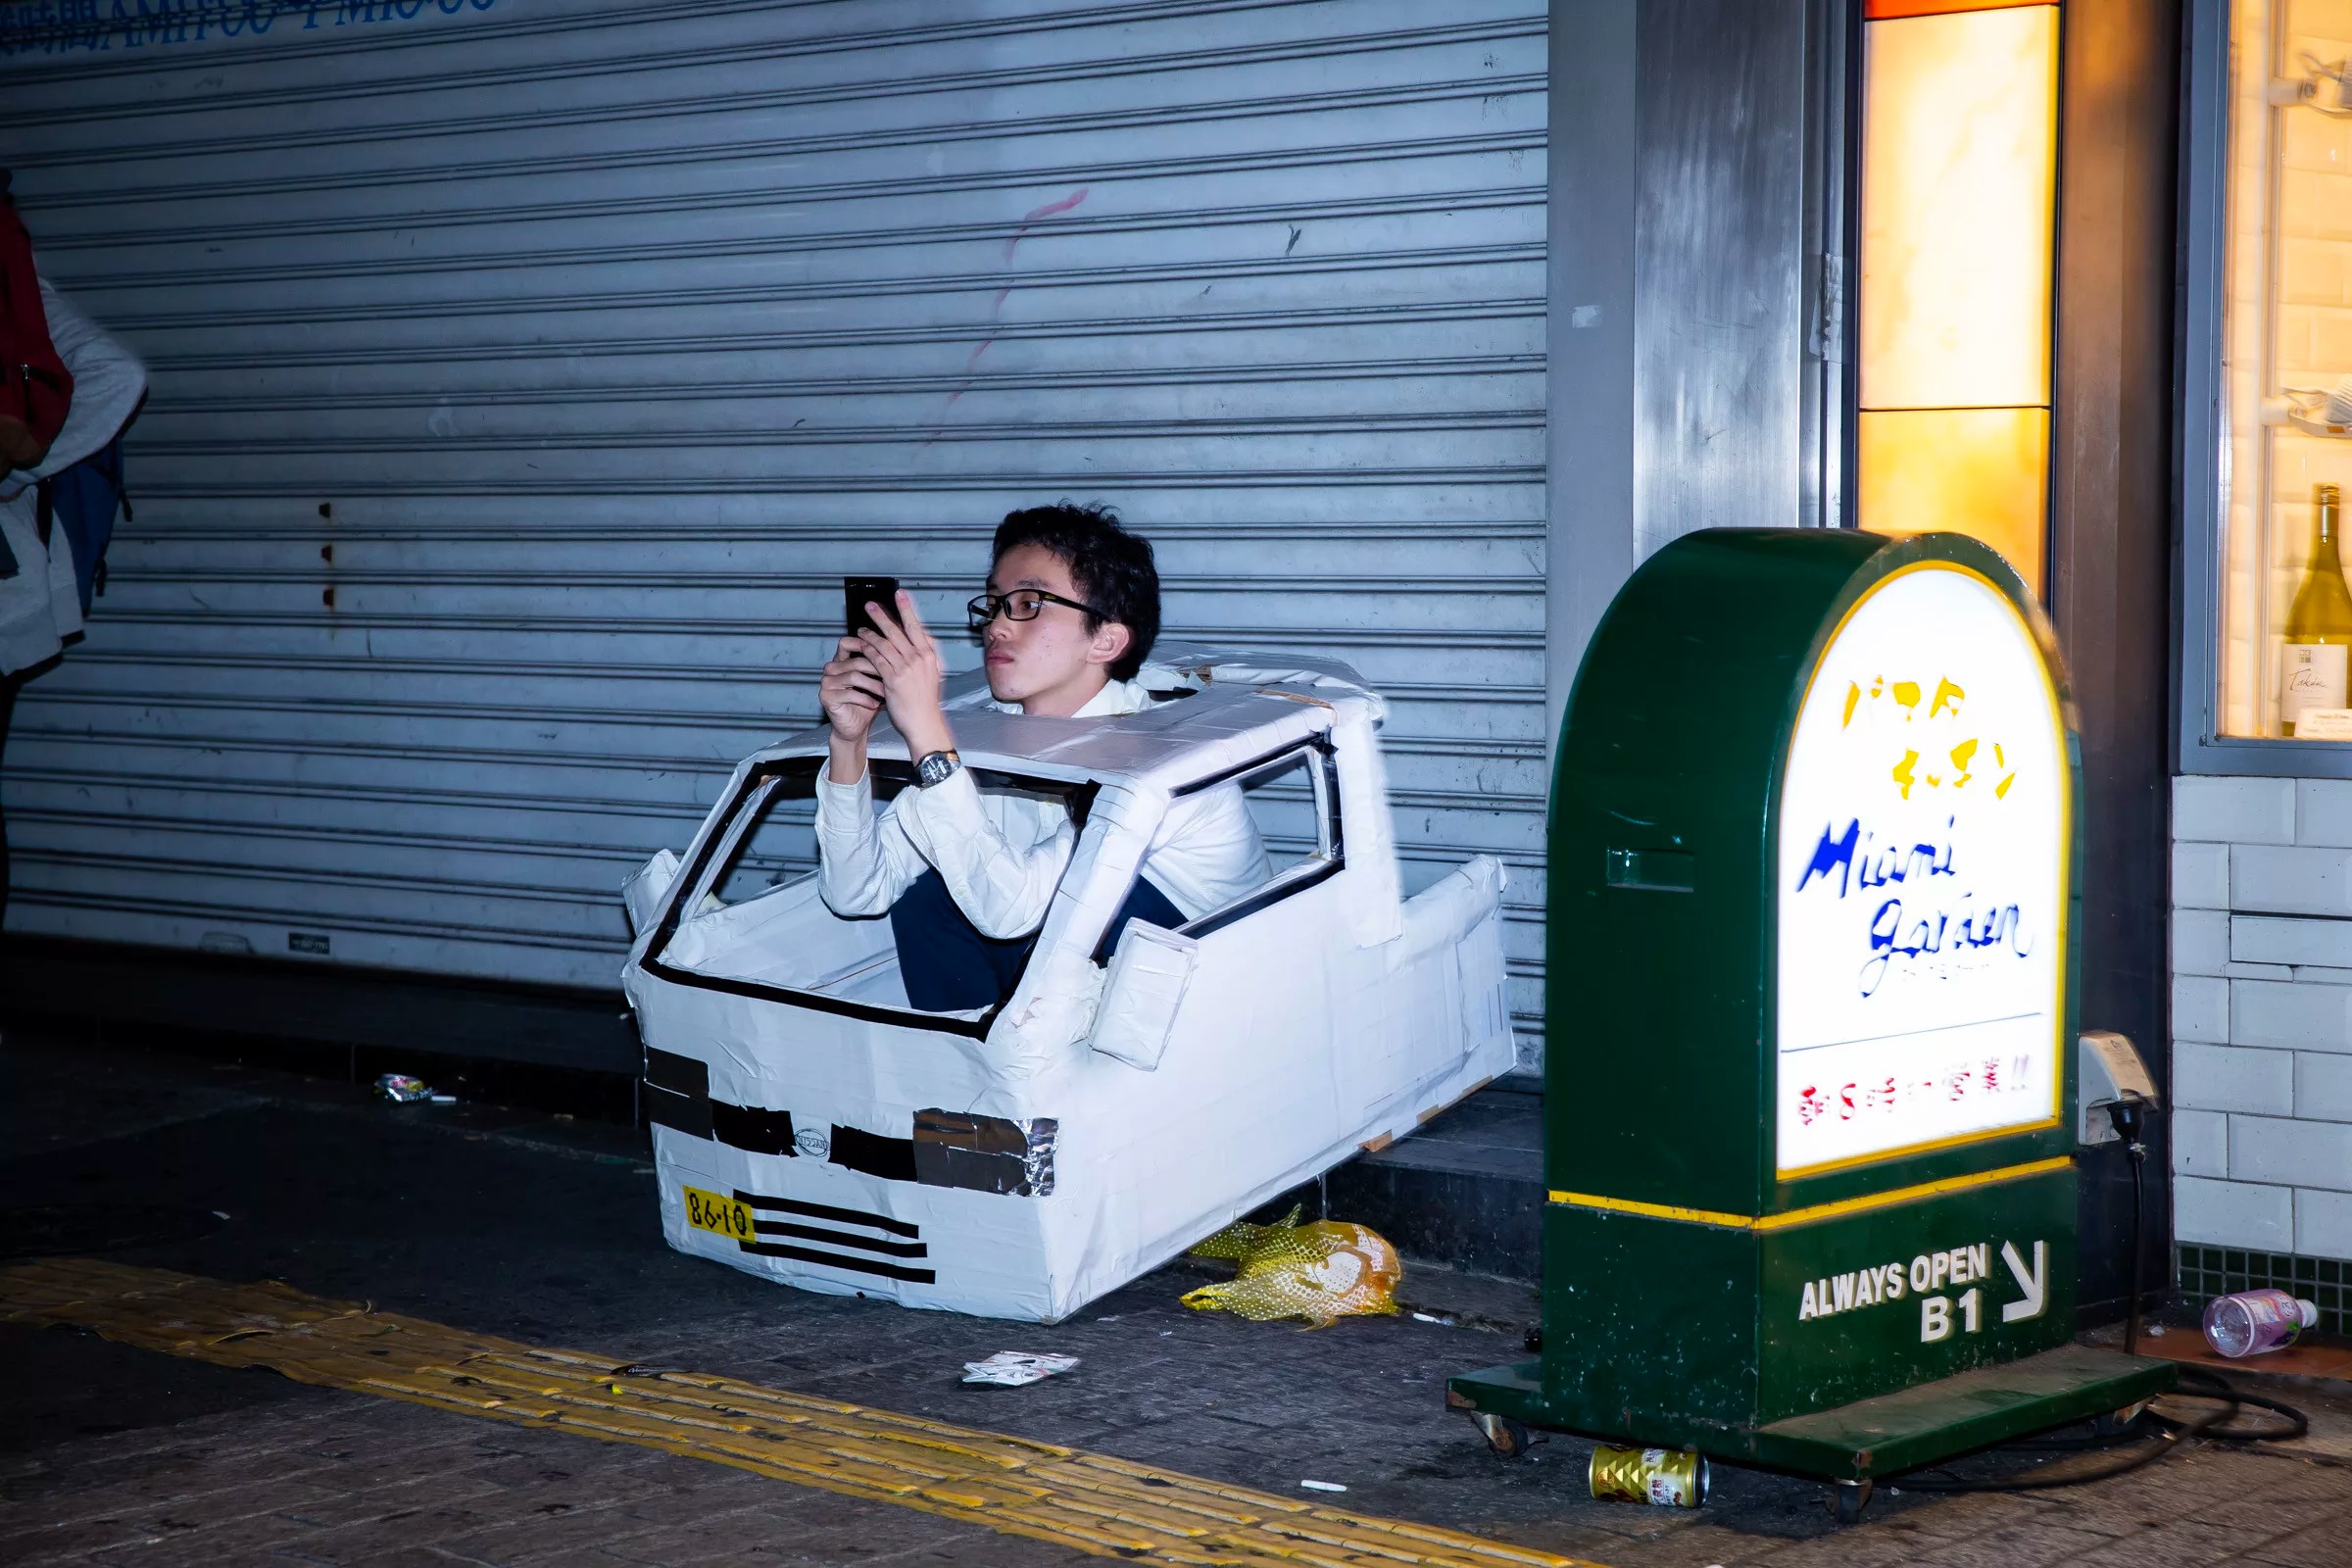 18渋谷ハロウィンで車の仮装して座り込んでるメガネの男性が寂しそう